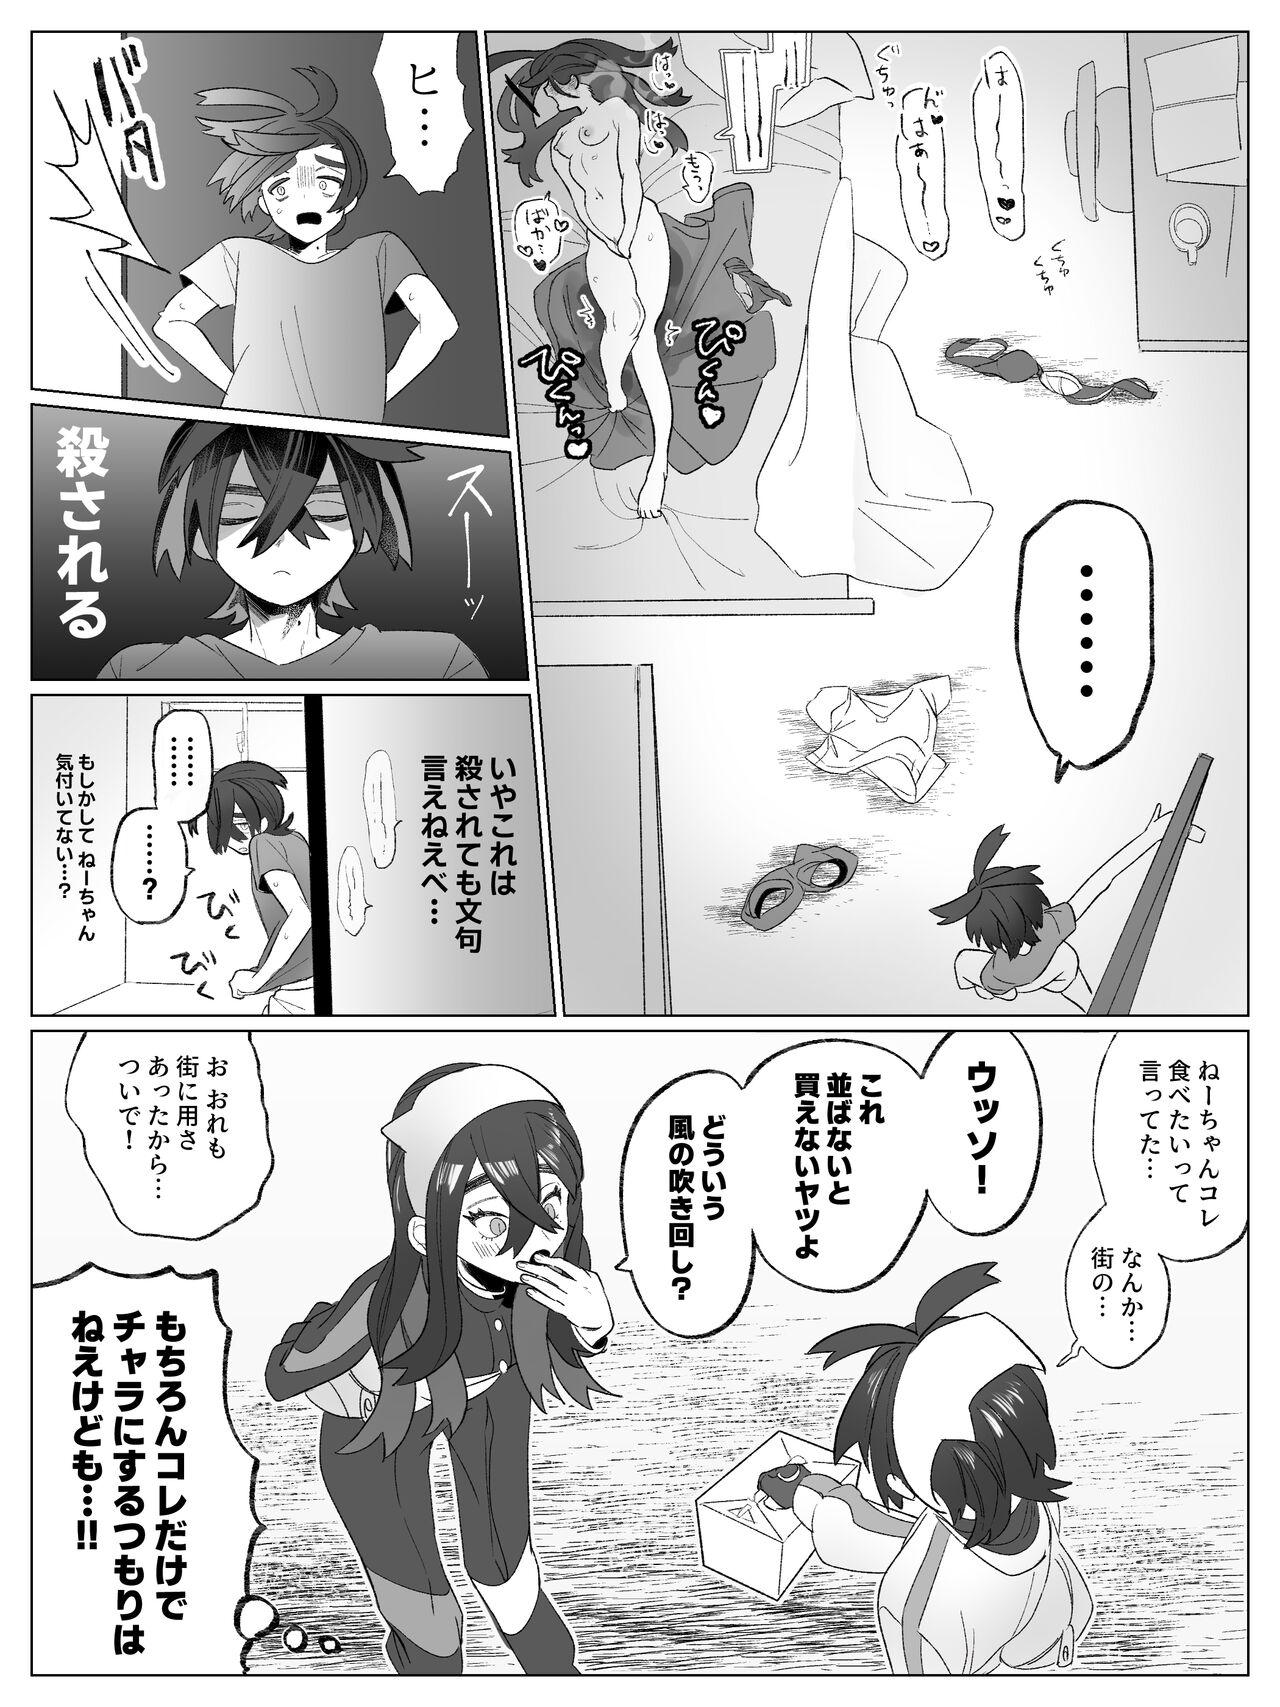 Amigos Miuchi no Onanie Miru no wa Kitsui - Pokemon | pocket monsters Snatch - Page 4